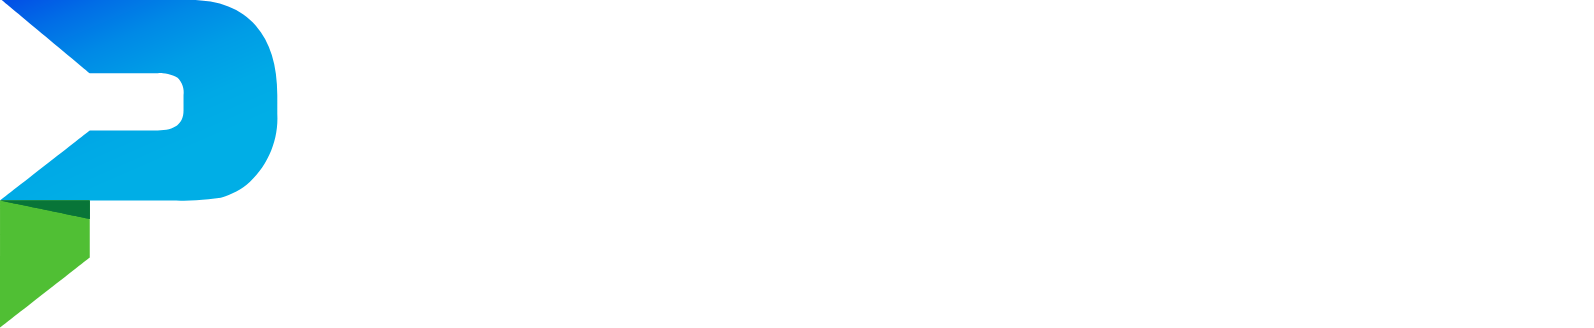 Parsons logo large for dark backgrounds (transparent PNG)